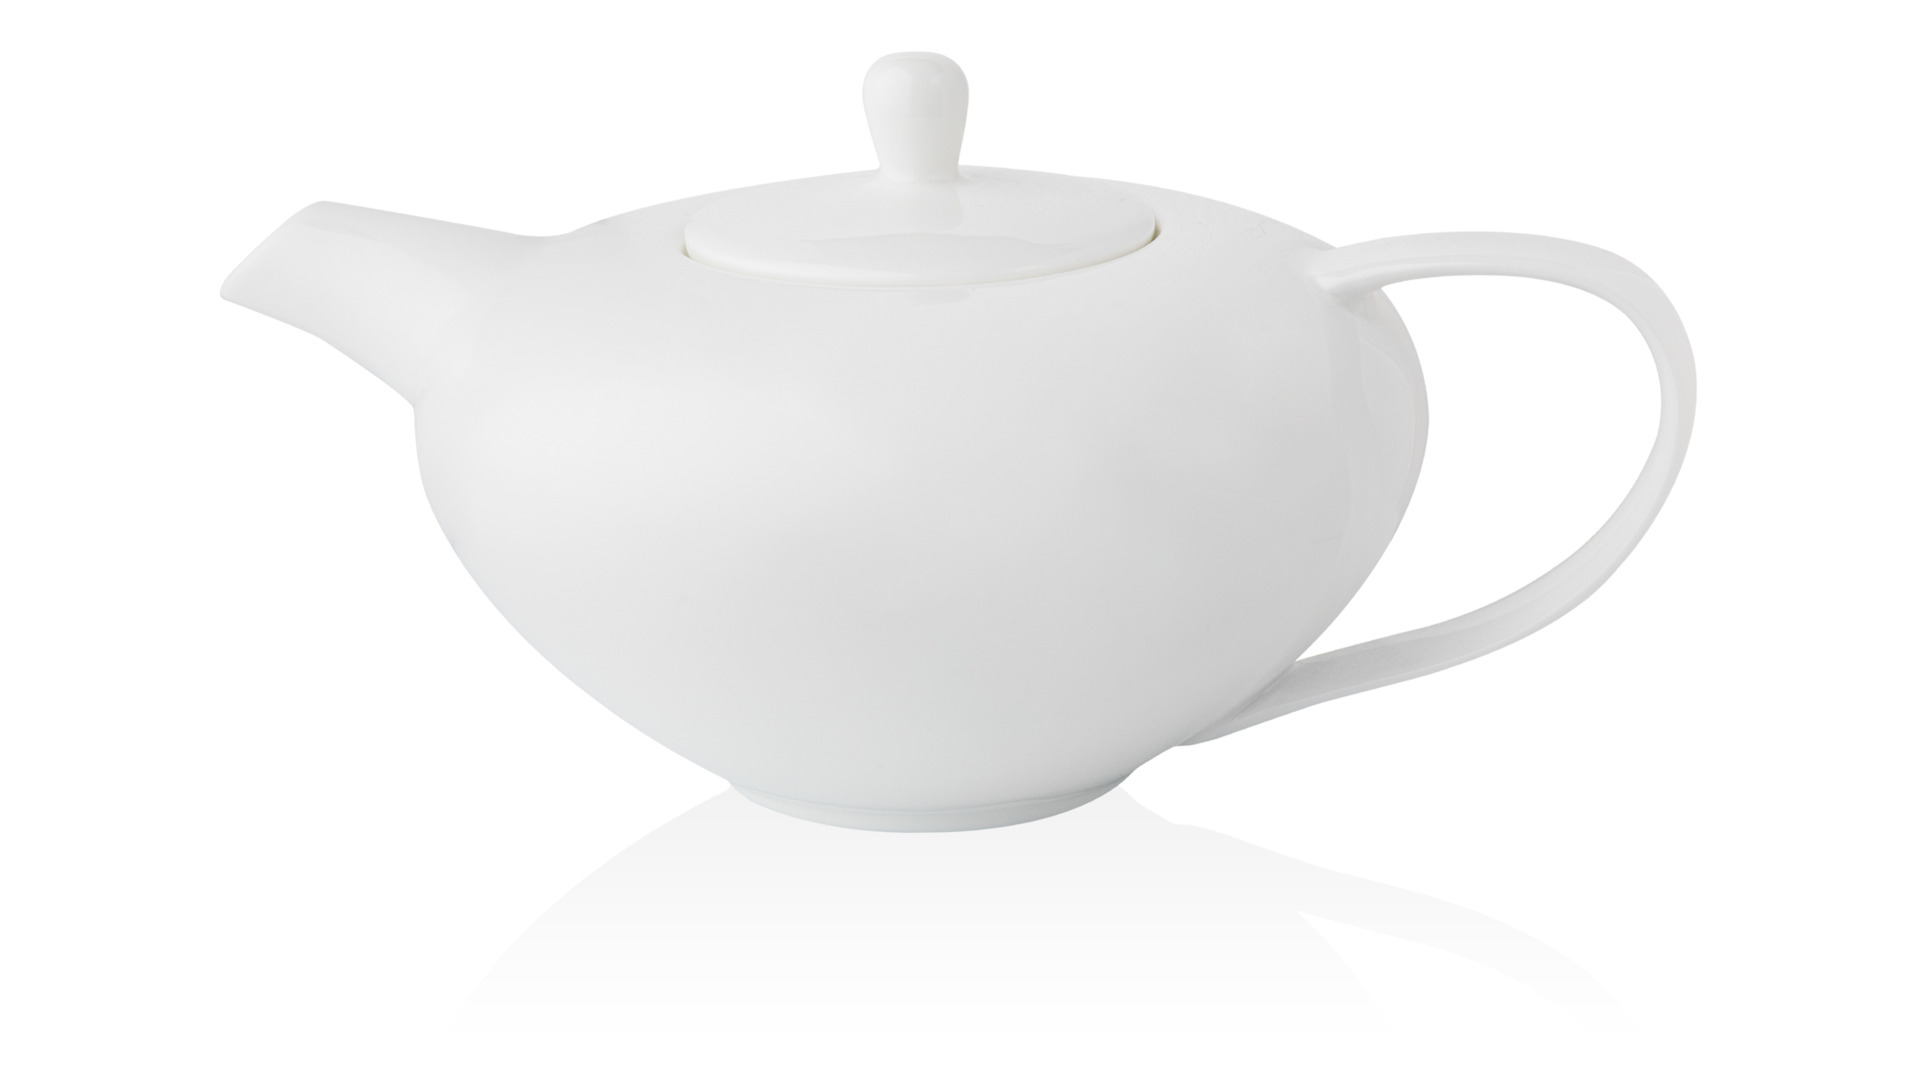 Сервиз чайно-столовый Mix&Match Синергия. Золотой кант на 6 персон 20 предметов, костяной фарфор